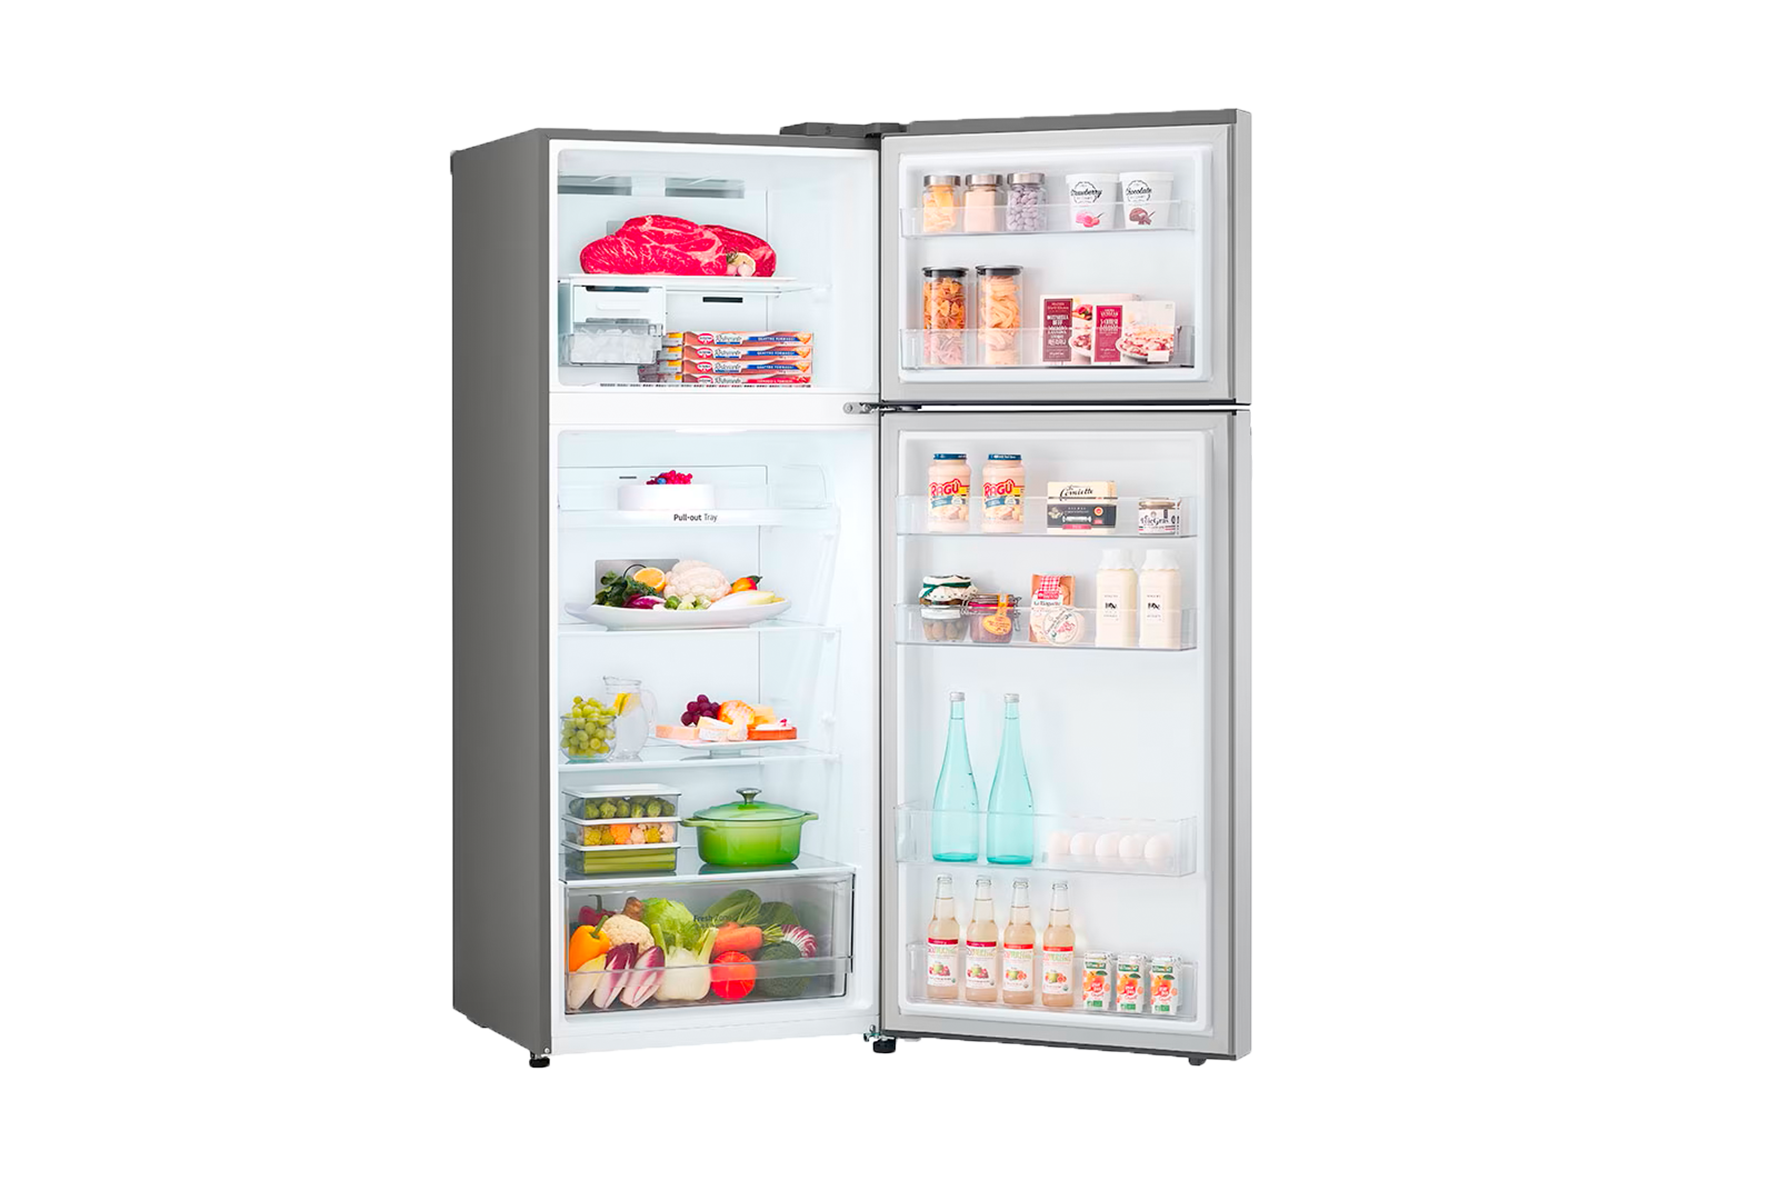 Refrigeradora LG 14 p3 VT40BPP